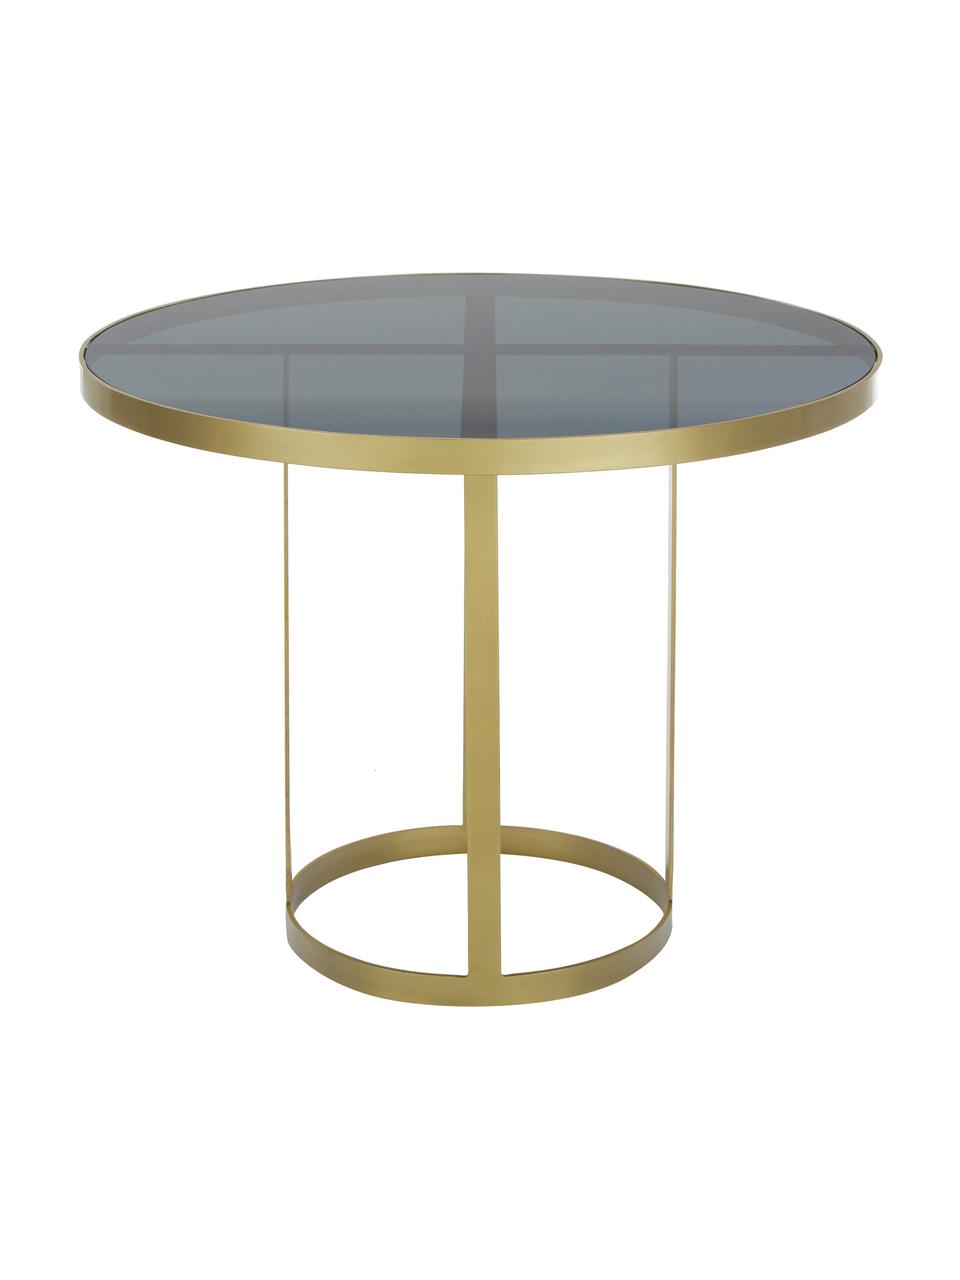 Runder Esstisch Marika mit Glasplatte, Ø 100 cm, Gestell: Metall, lackiert, Tischplatte: Glas, getönt, Transparent, Ø 100 x H 76 cm